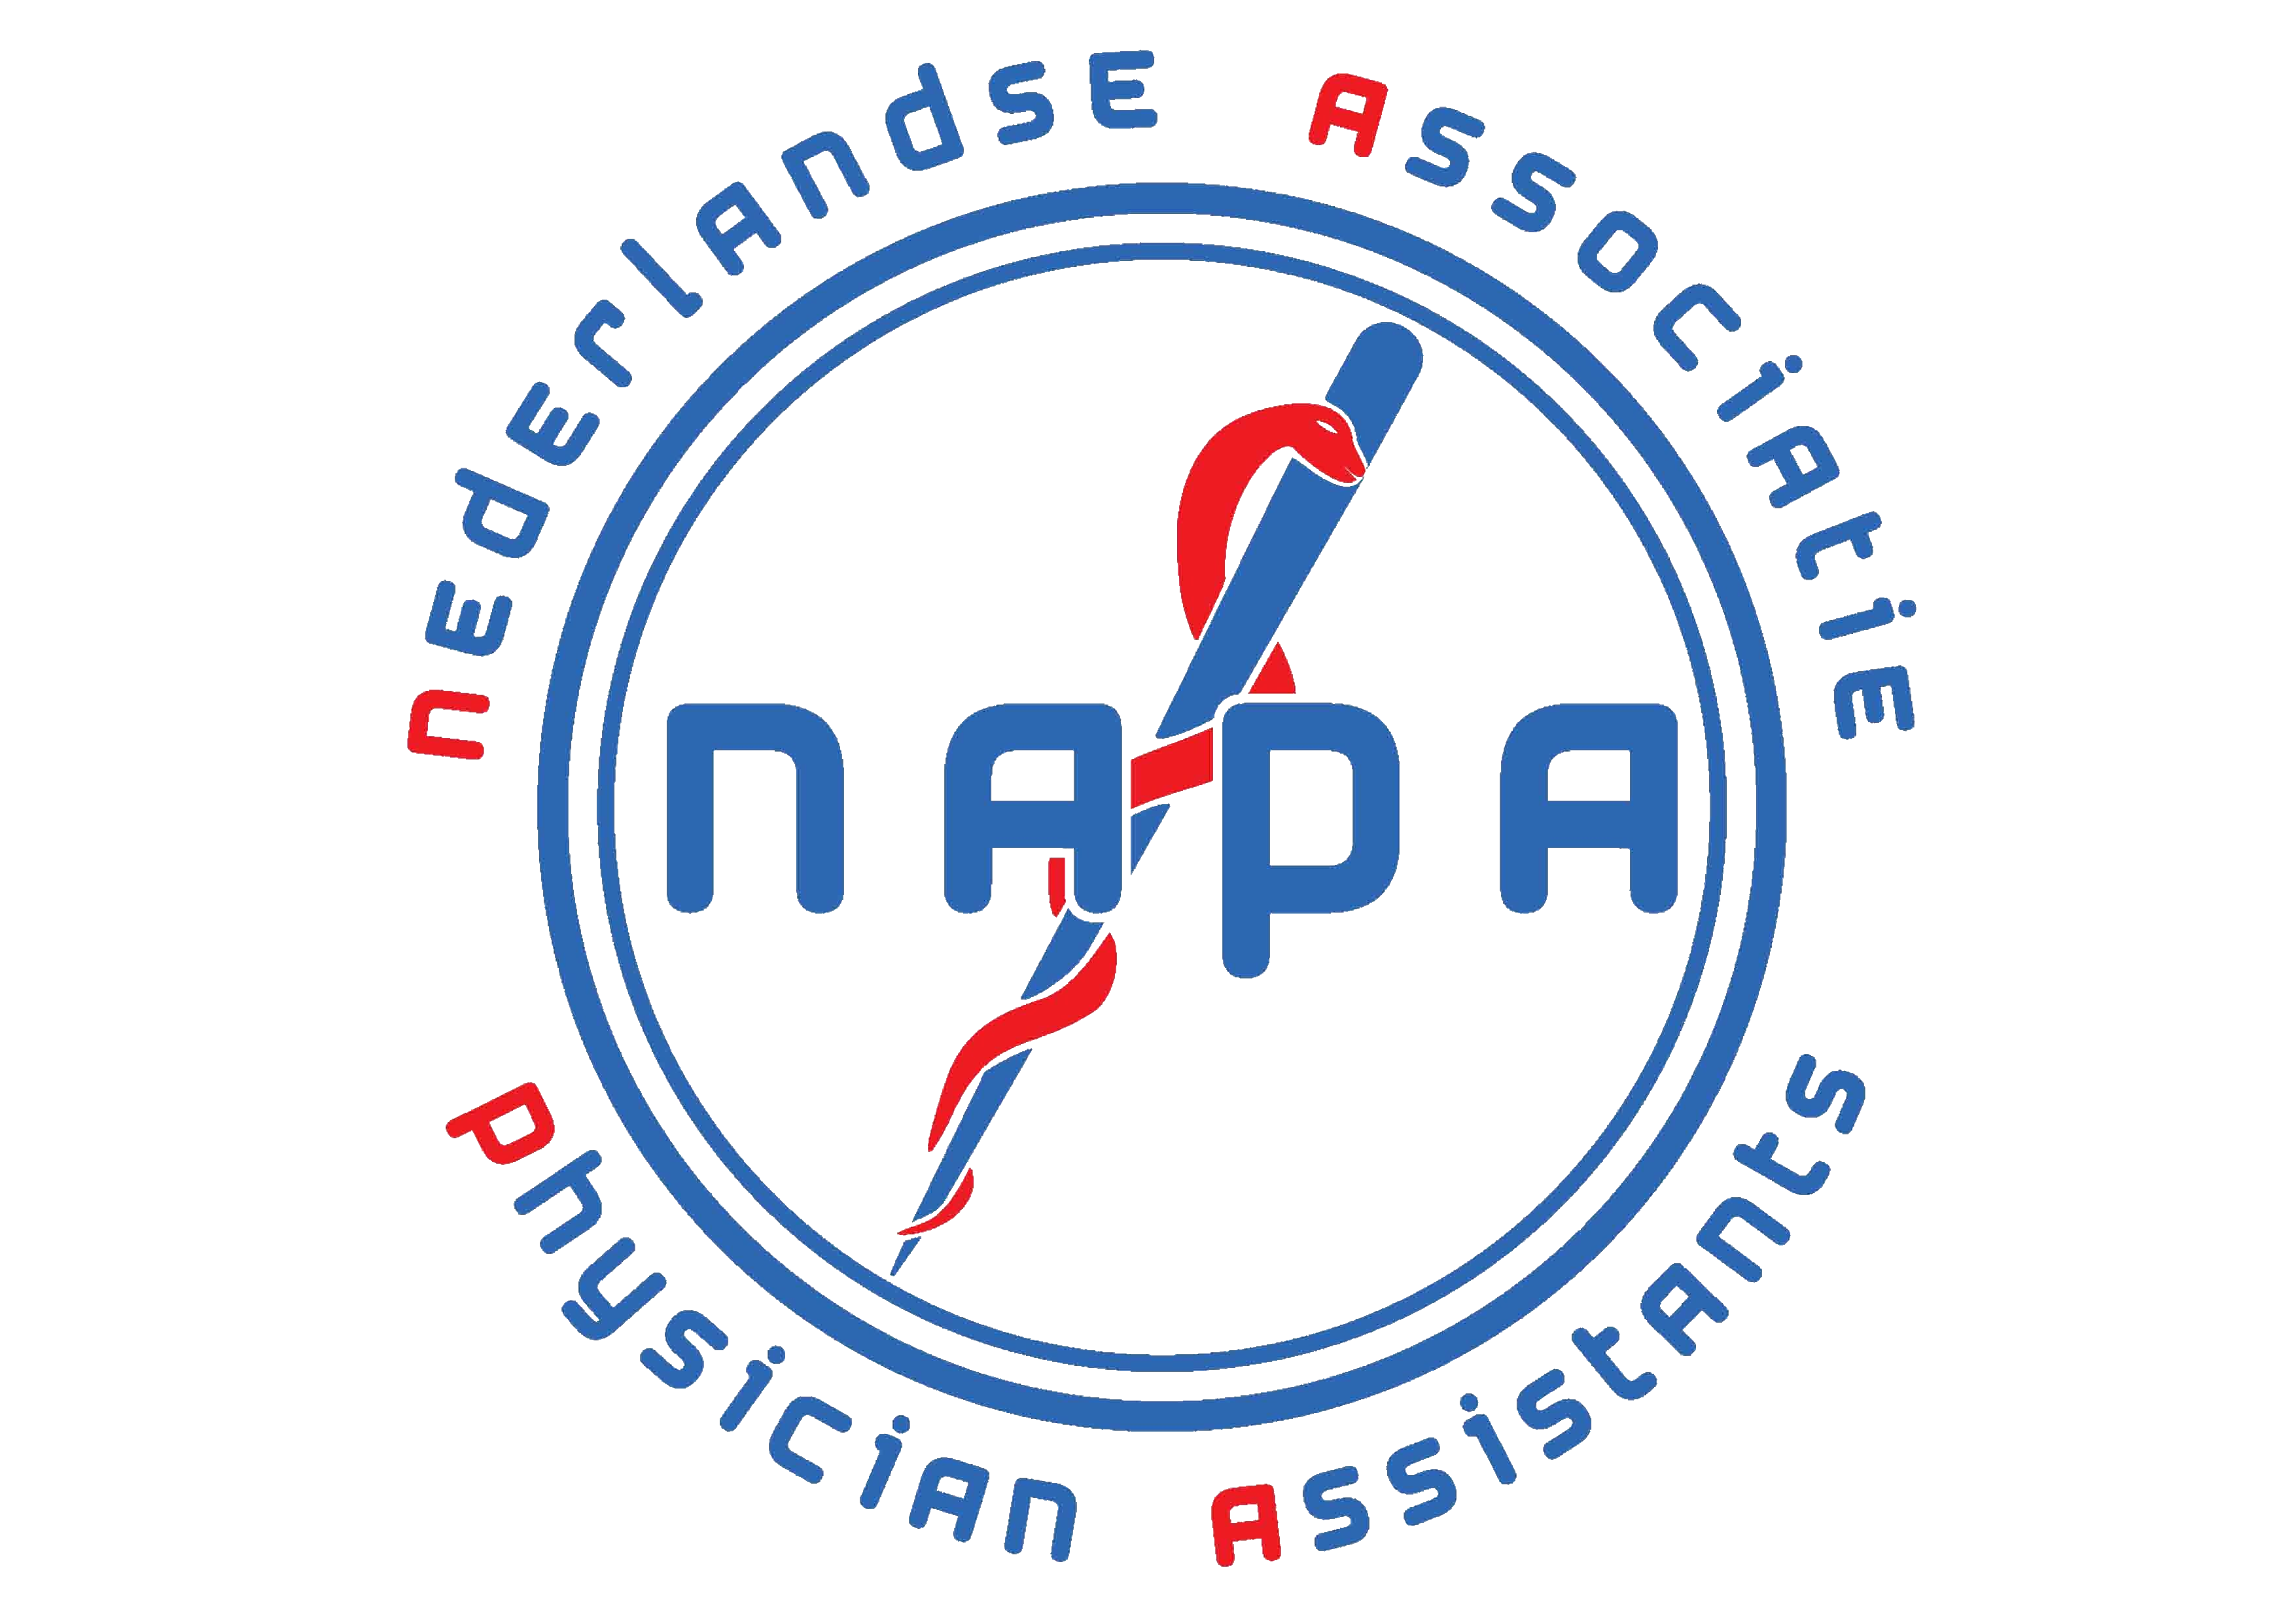 Logo NAPA